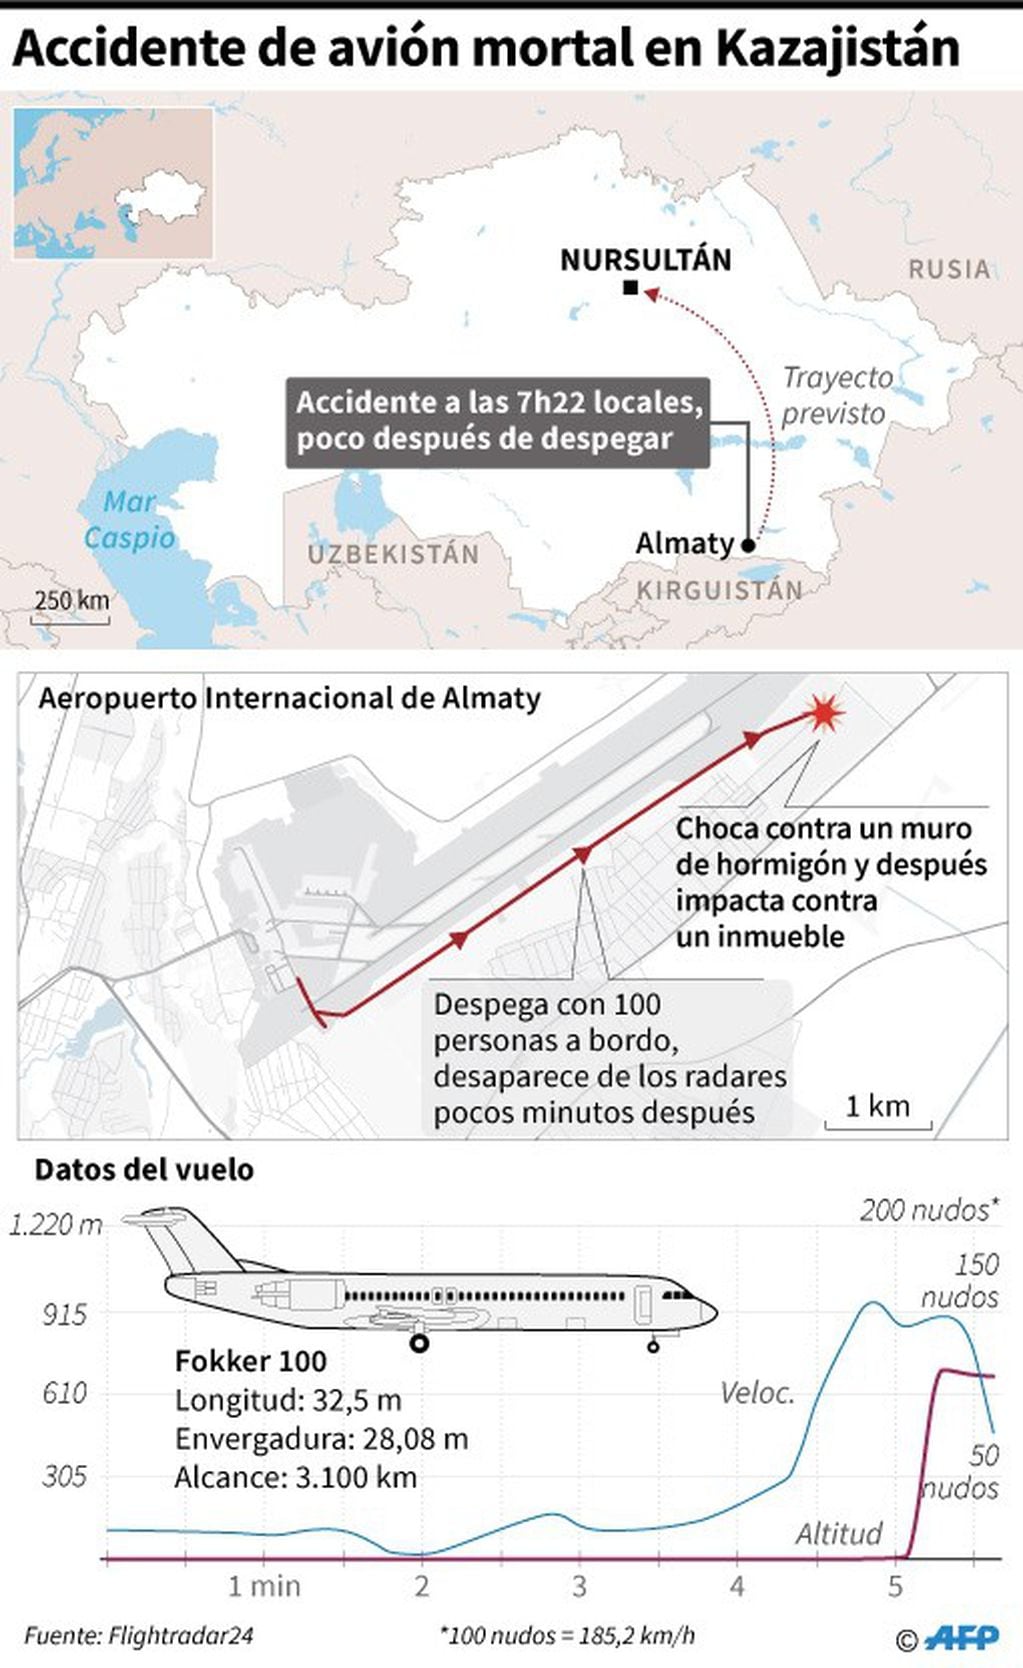 Gráfico sobre el accidente de avión en Kazajistán de este viernes - AFP / AFP